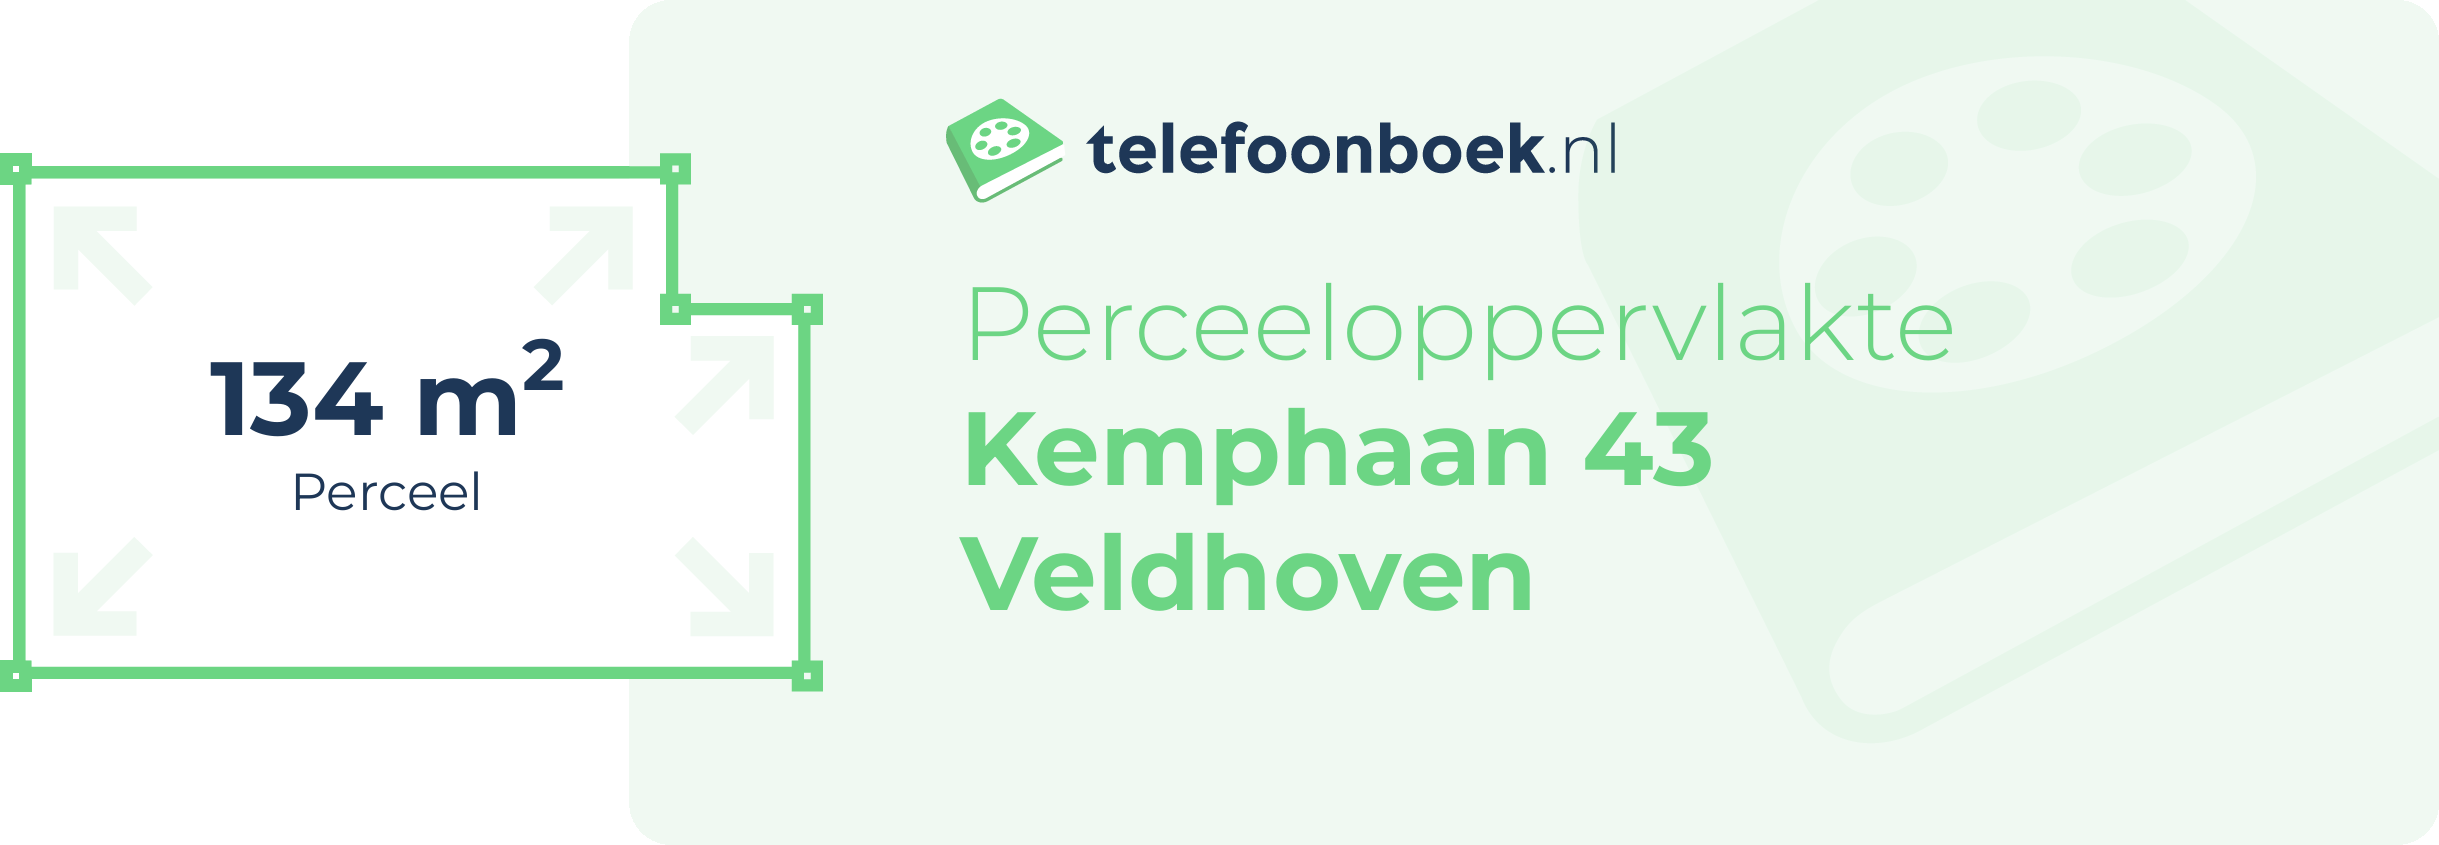 Perceeloppervlakte Kemphaan 43 Veldhoven